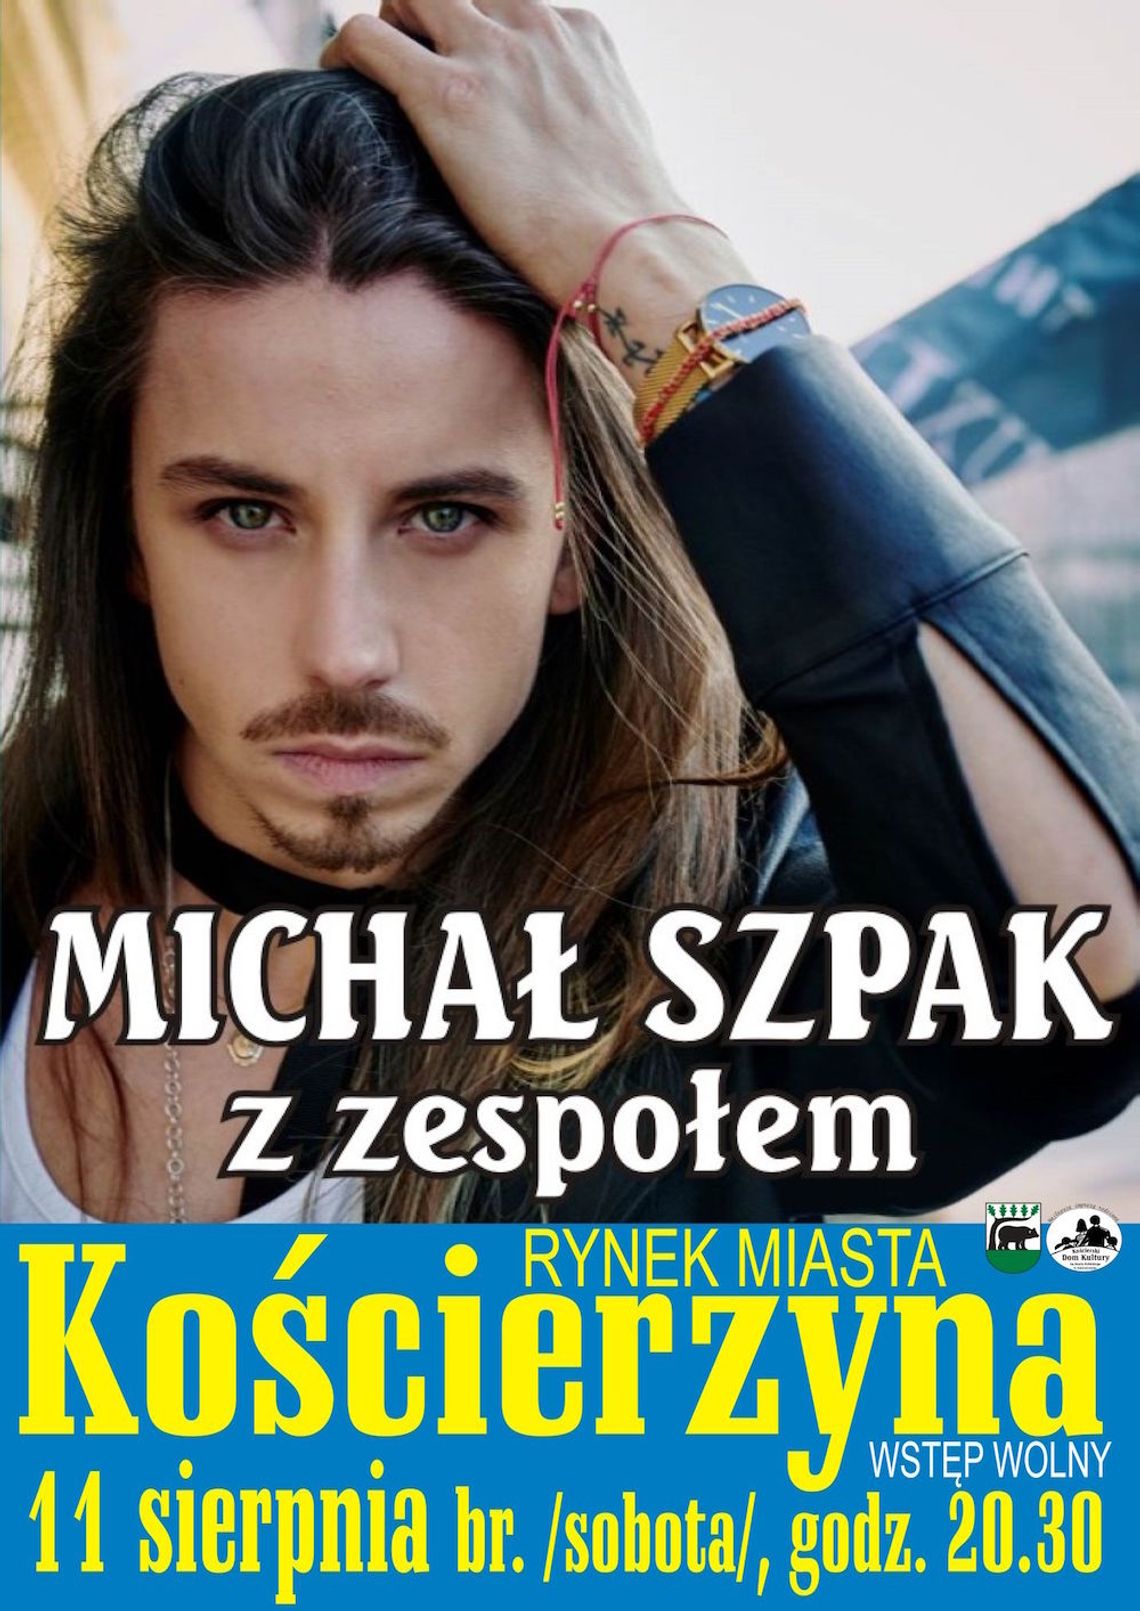 Już w sobotę Michał Szpak zagra w Kościerzynie